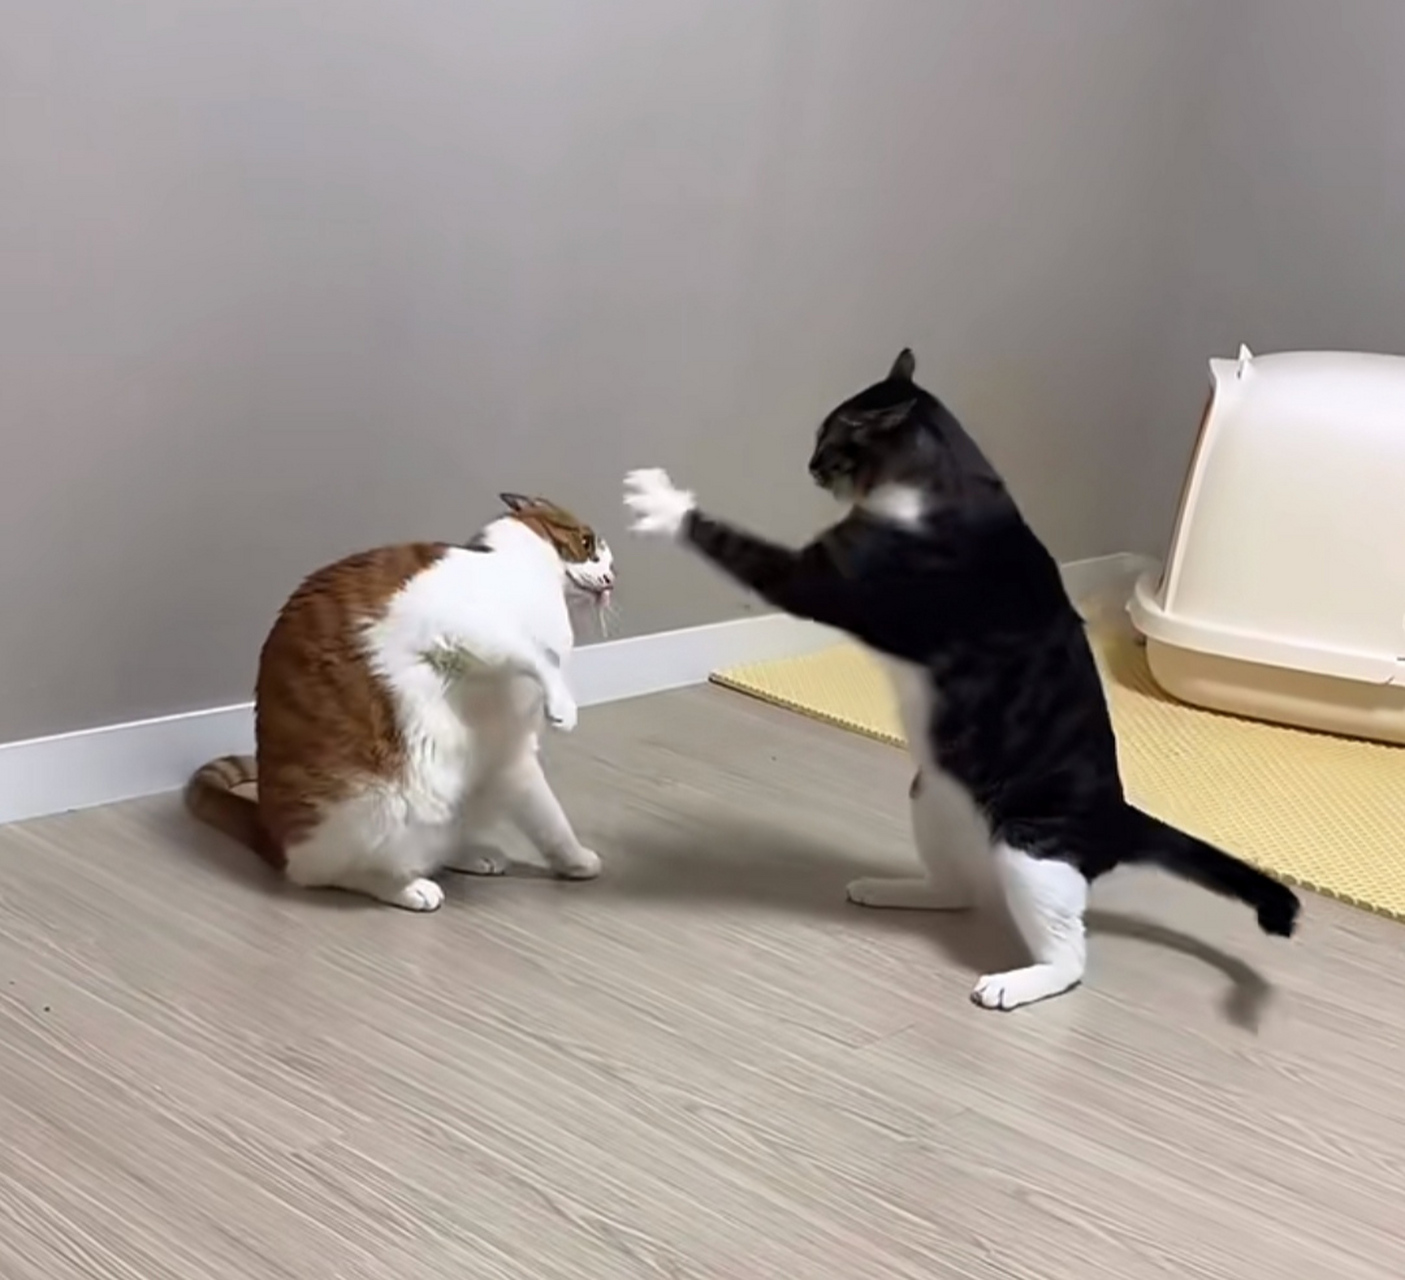 正在打架的两只猫咪,瞧它俩这架势,哪像打架分明是在斗舞